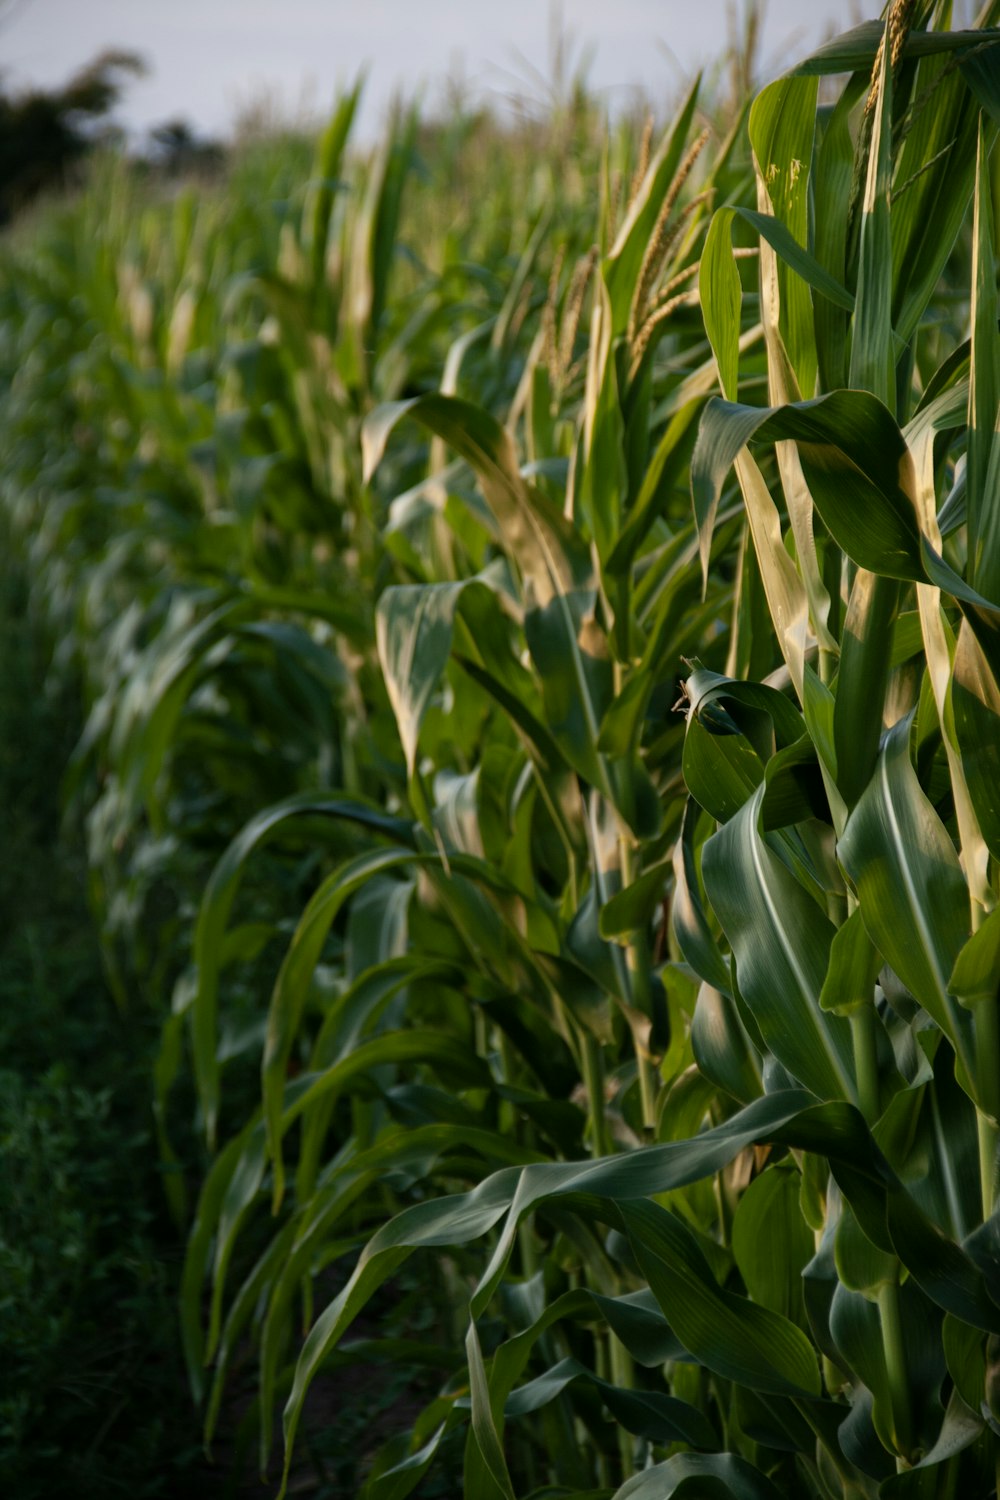 Un campo de maíz se muestra en primer plano